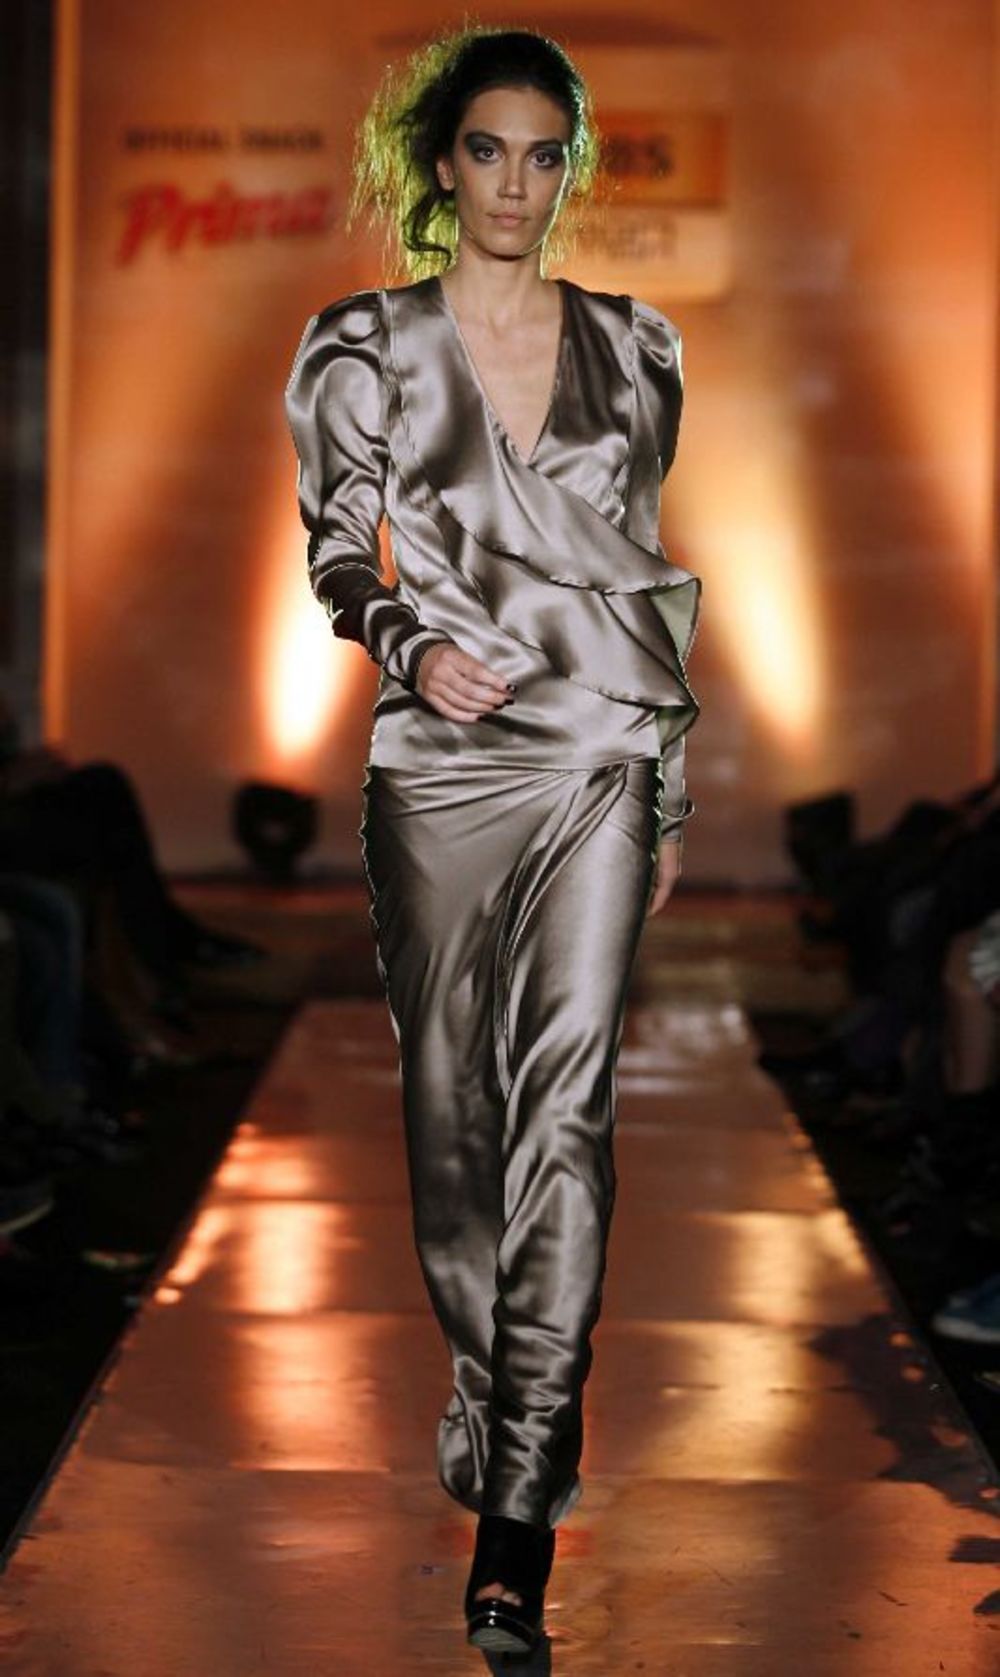 Poznata modna dizajnerka Suzana Perić predstavila je 12. oktobra u Domu garde, u prisustvu velikog broja poznatih ličnosti, svoju novu koleciju She Rules čije je zaštitno lice Bojana Stojković